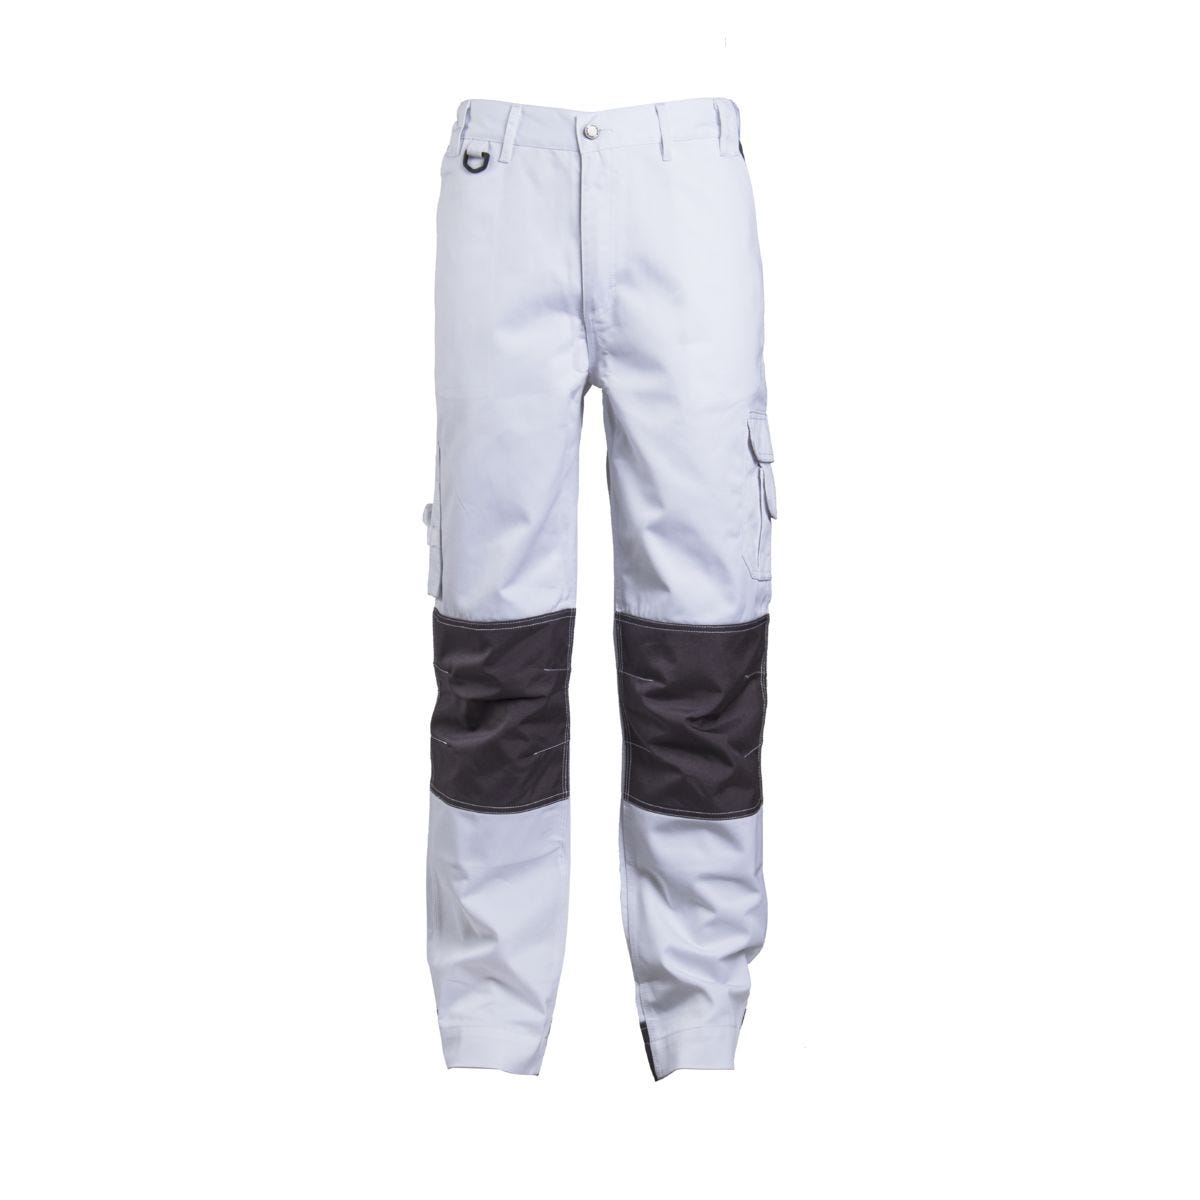 Pantalon CLASS blanc - COVERGUARD - Taille L 0